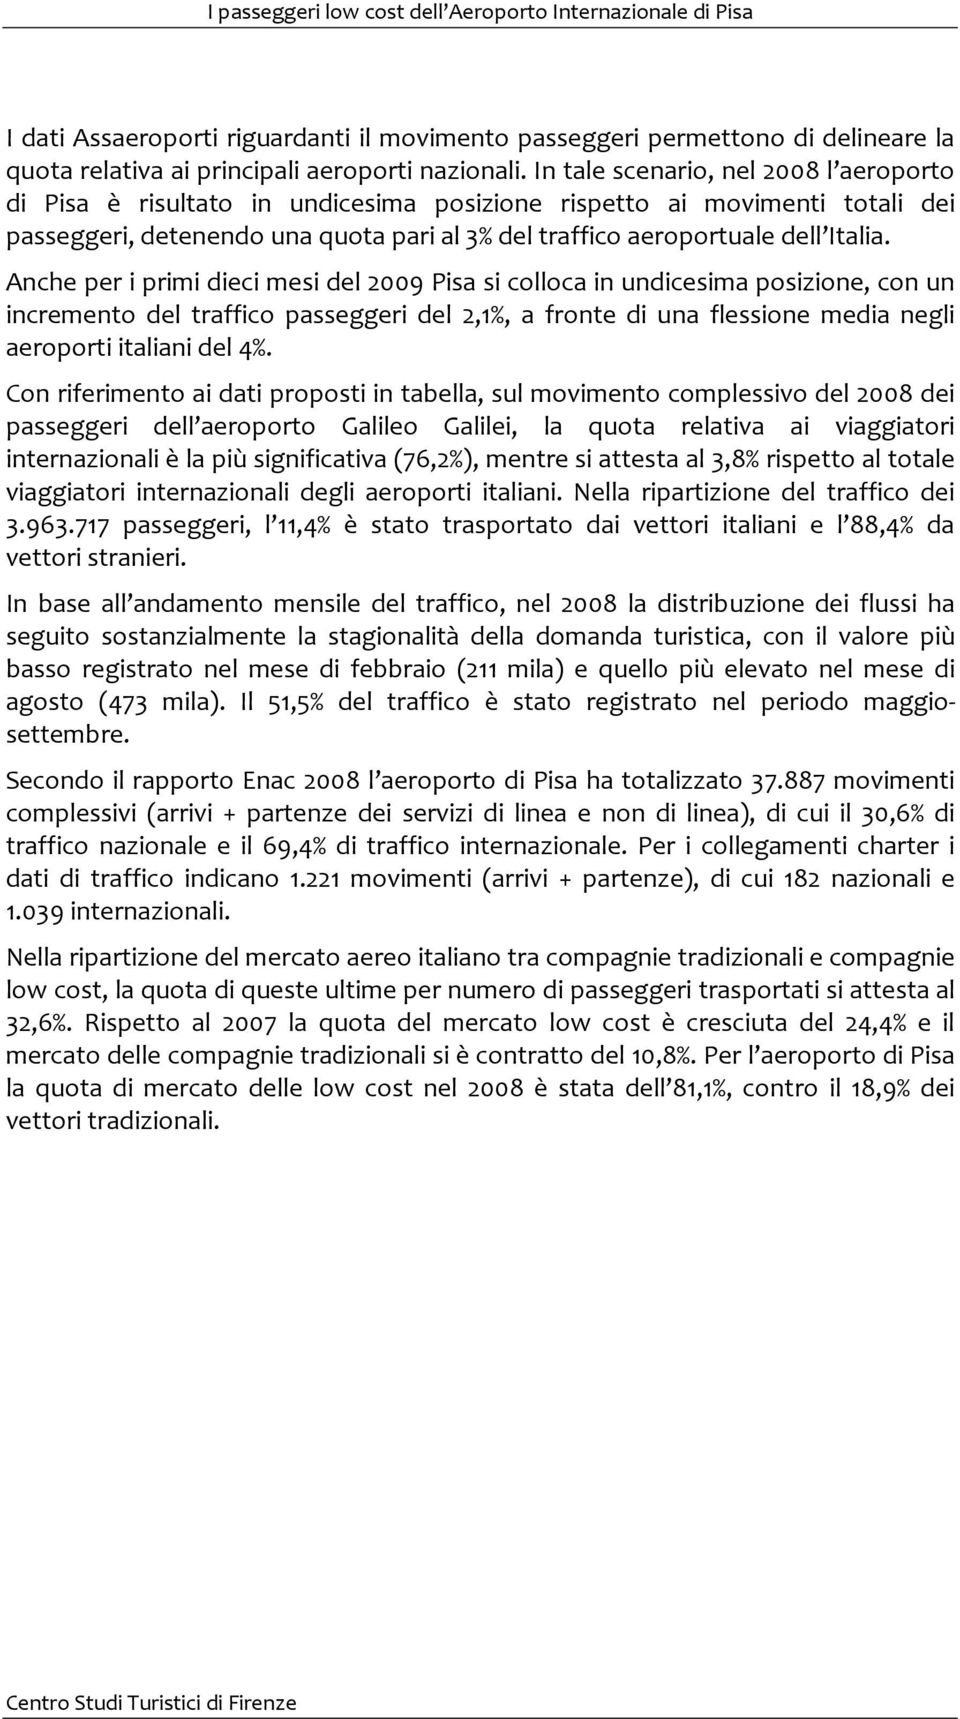 Anche per i primi dieci mesi del 2009 Pisa si colloca in undicesima posizione, con un incremento del traffico passeggeri del 2,1%, a fronte di una flessione media negli aeroporti italiani del 4%.